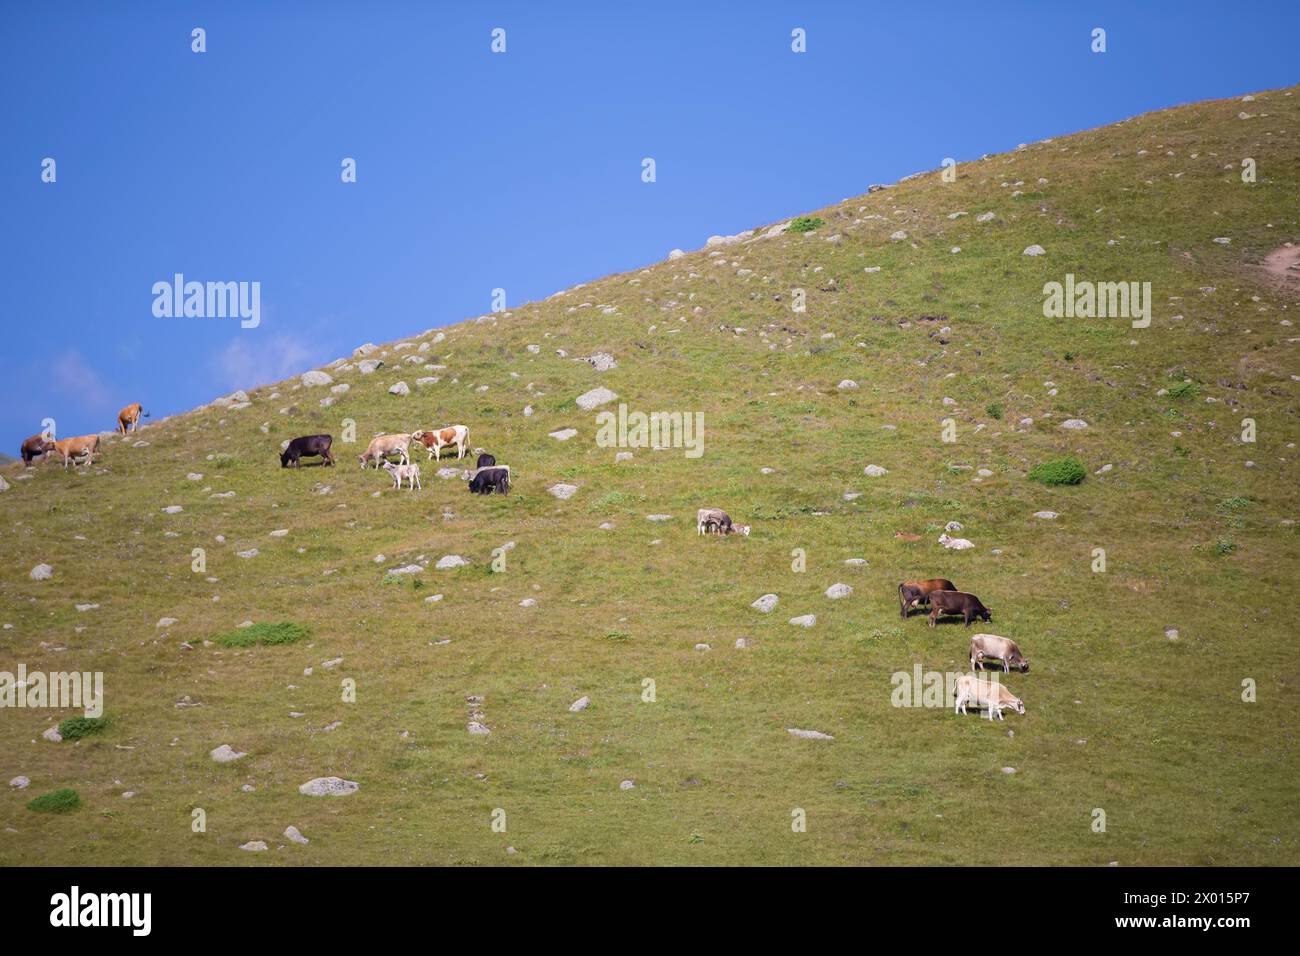 Eine Herde Kühe weidet auf einem Berg, der mit Gras und felsigen Steinen bedeckt ist. Stockfoto